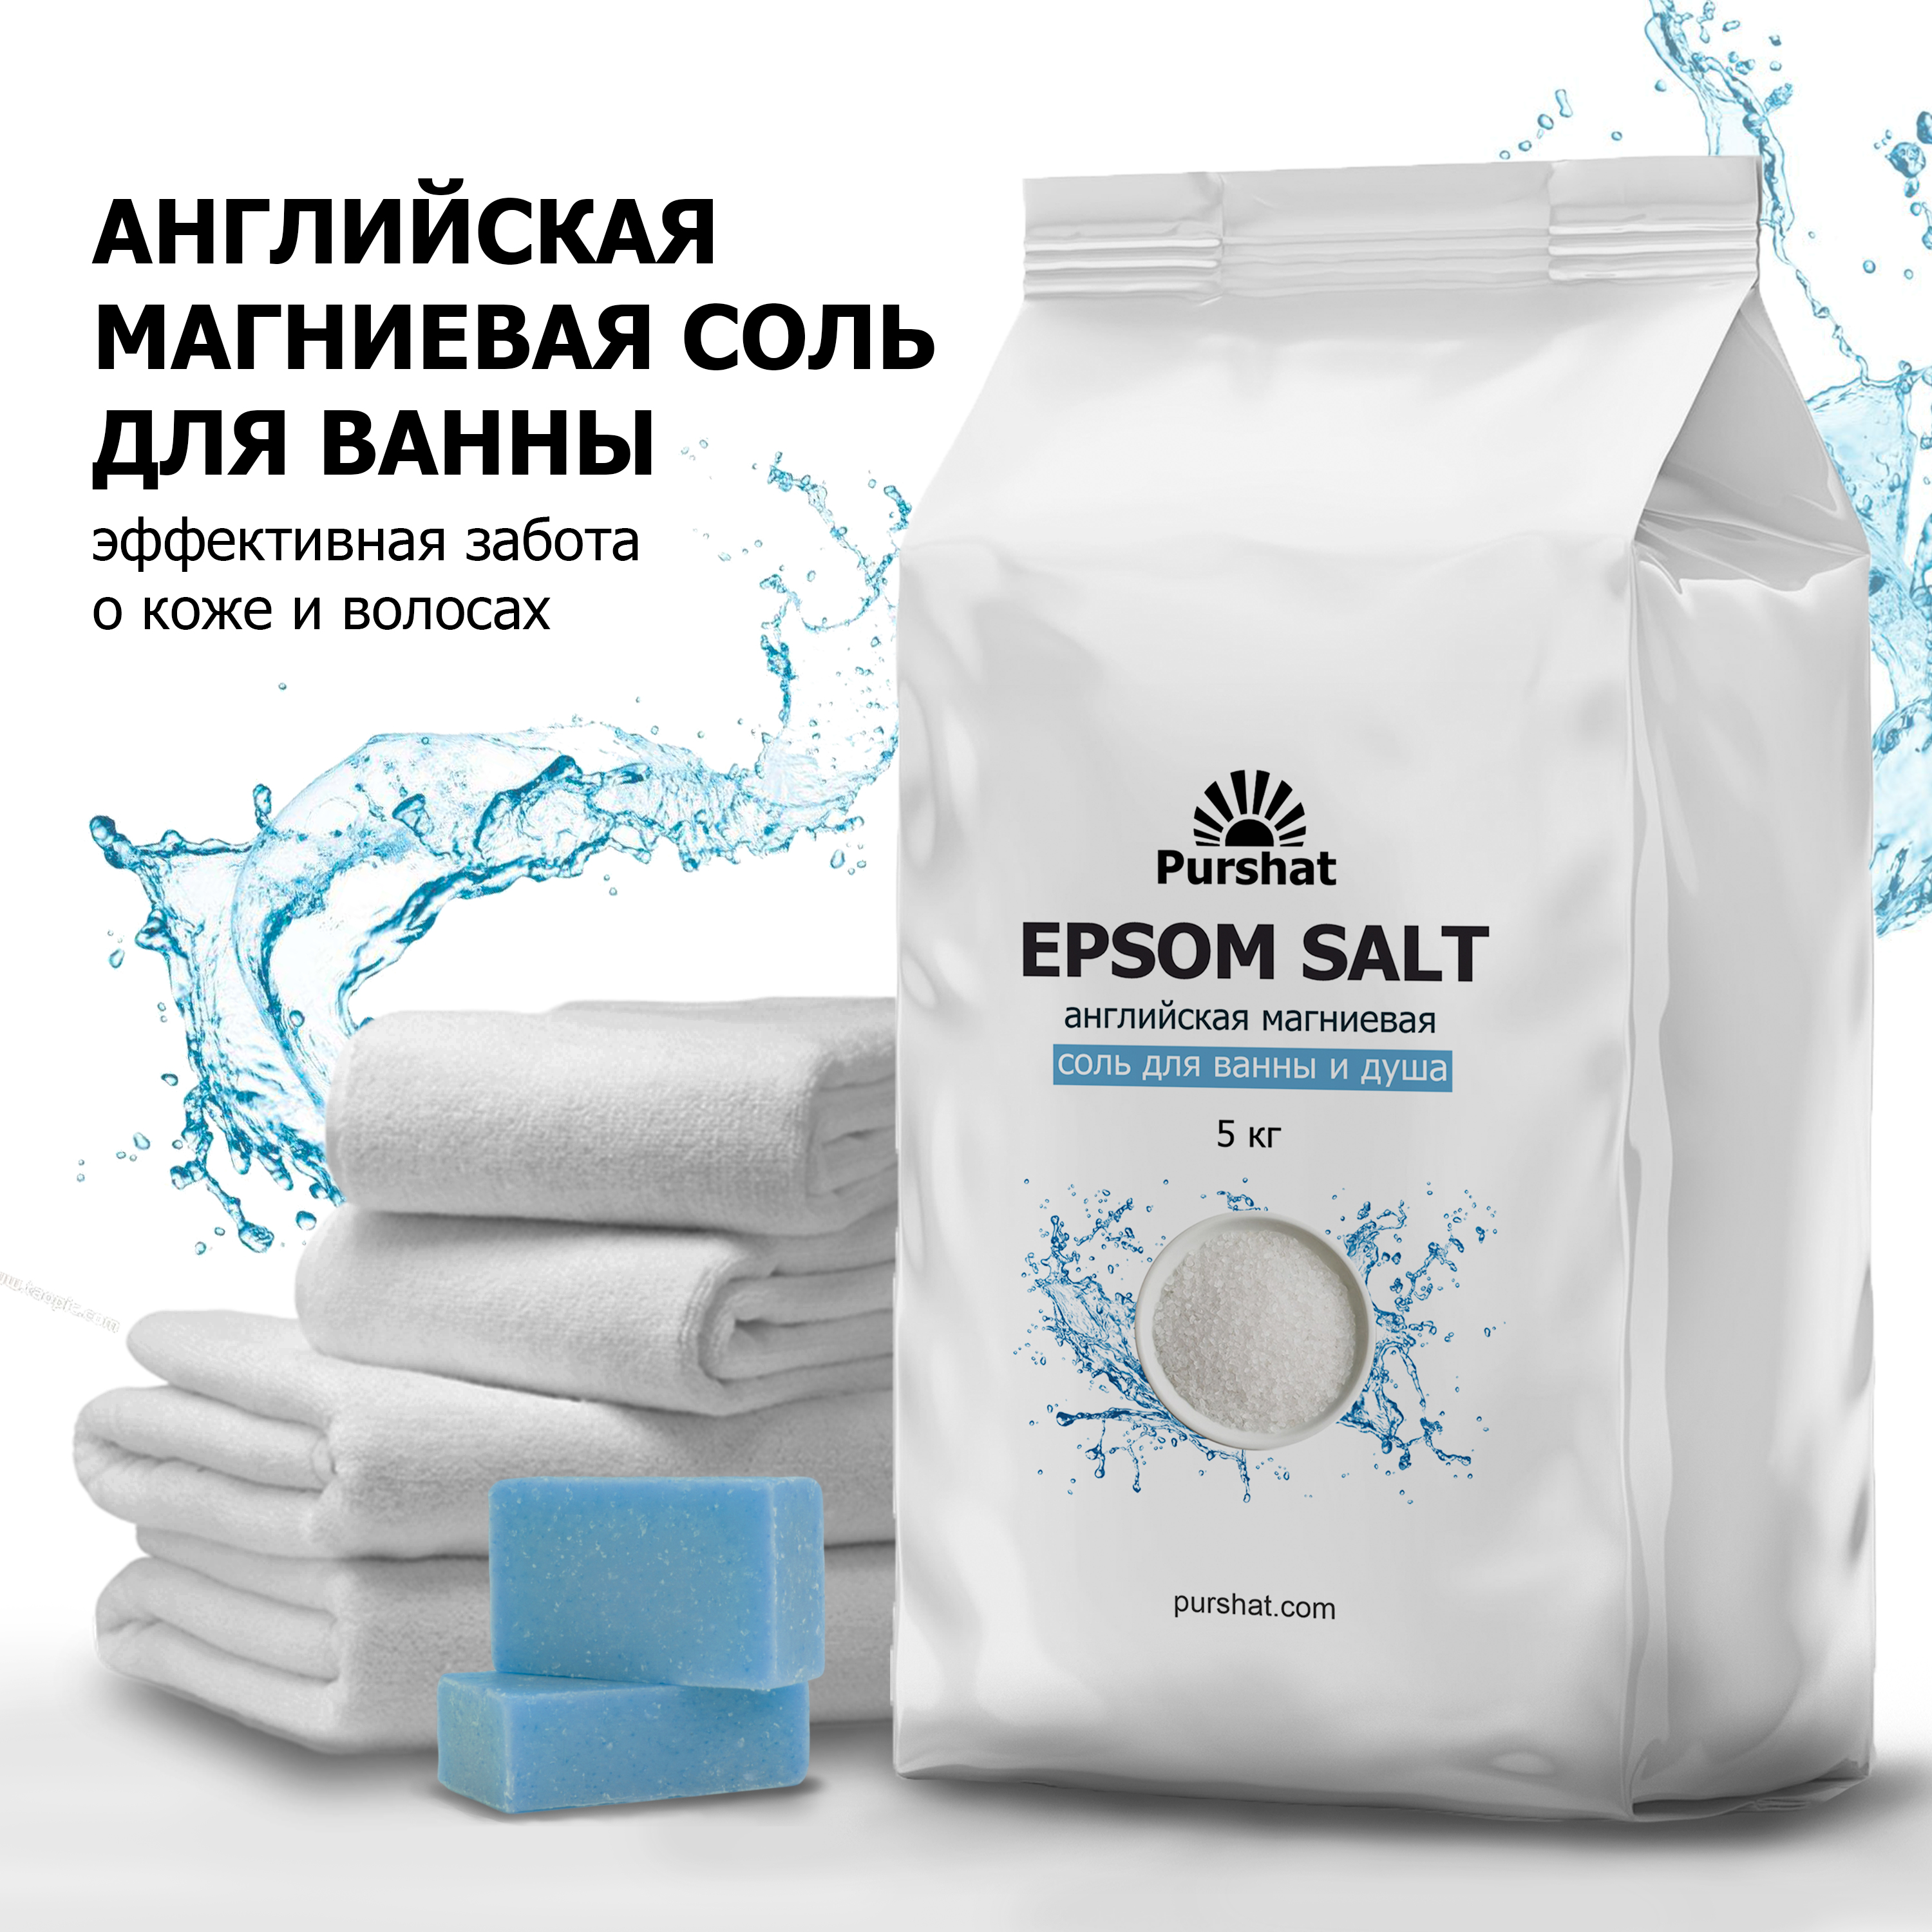 Английская магниевая соль для ванны Purshat Epsom 5 кг sibirbotaniq соль для ванн магниевая английская снятие стресса улучшение сна 500 0